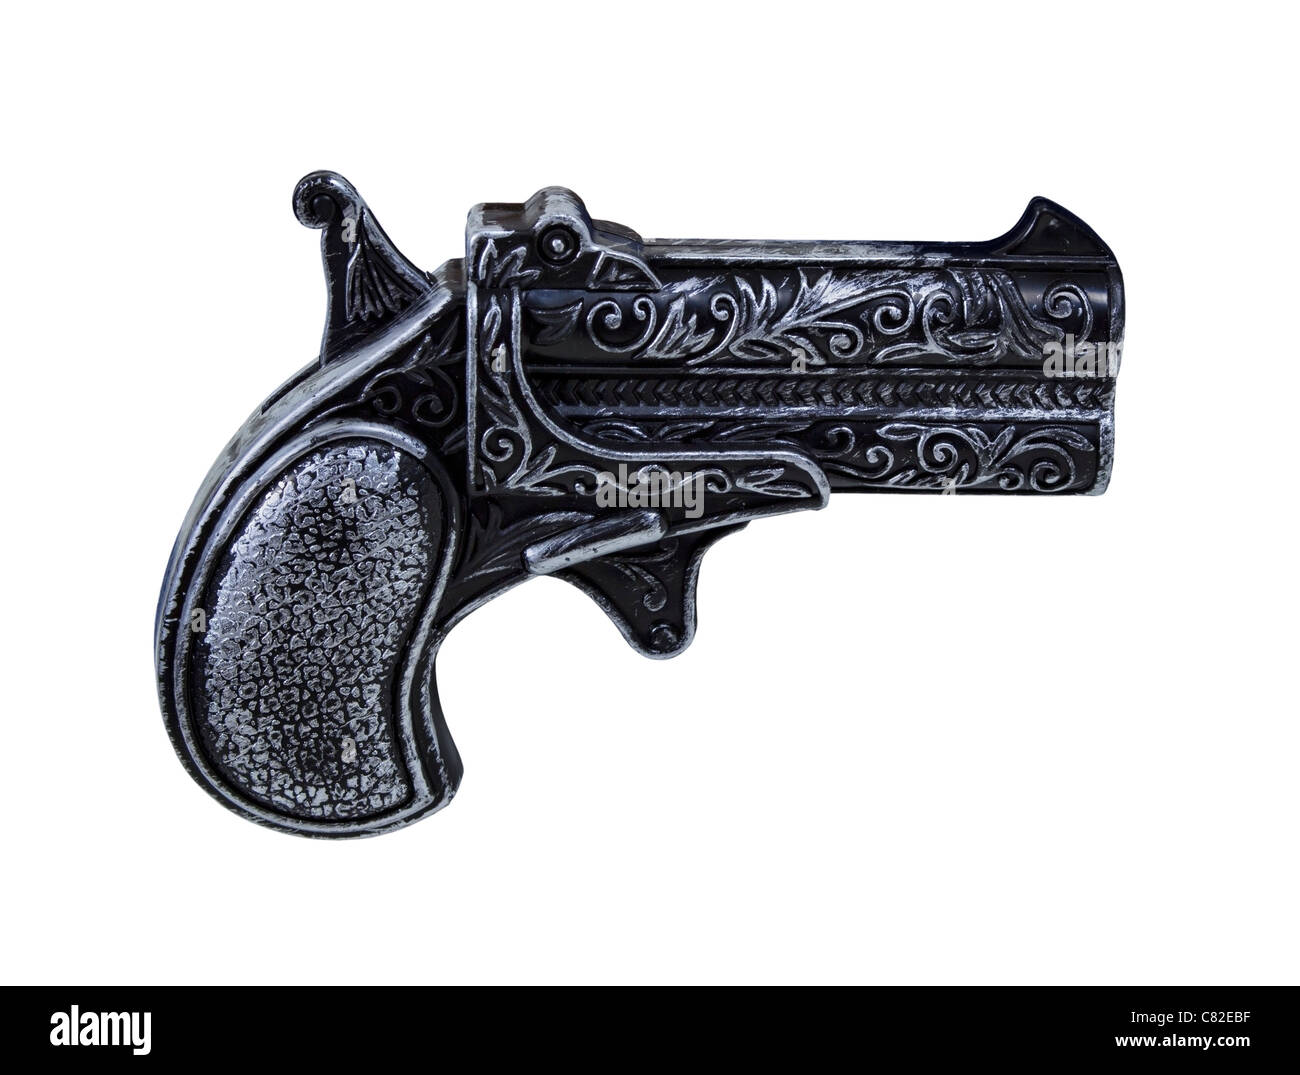 Kleine Schwarze Pistole Spielzeugpistole mit silbernen Highlights - Pfad enthalten Stockfoto